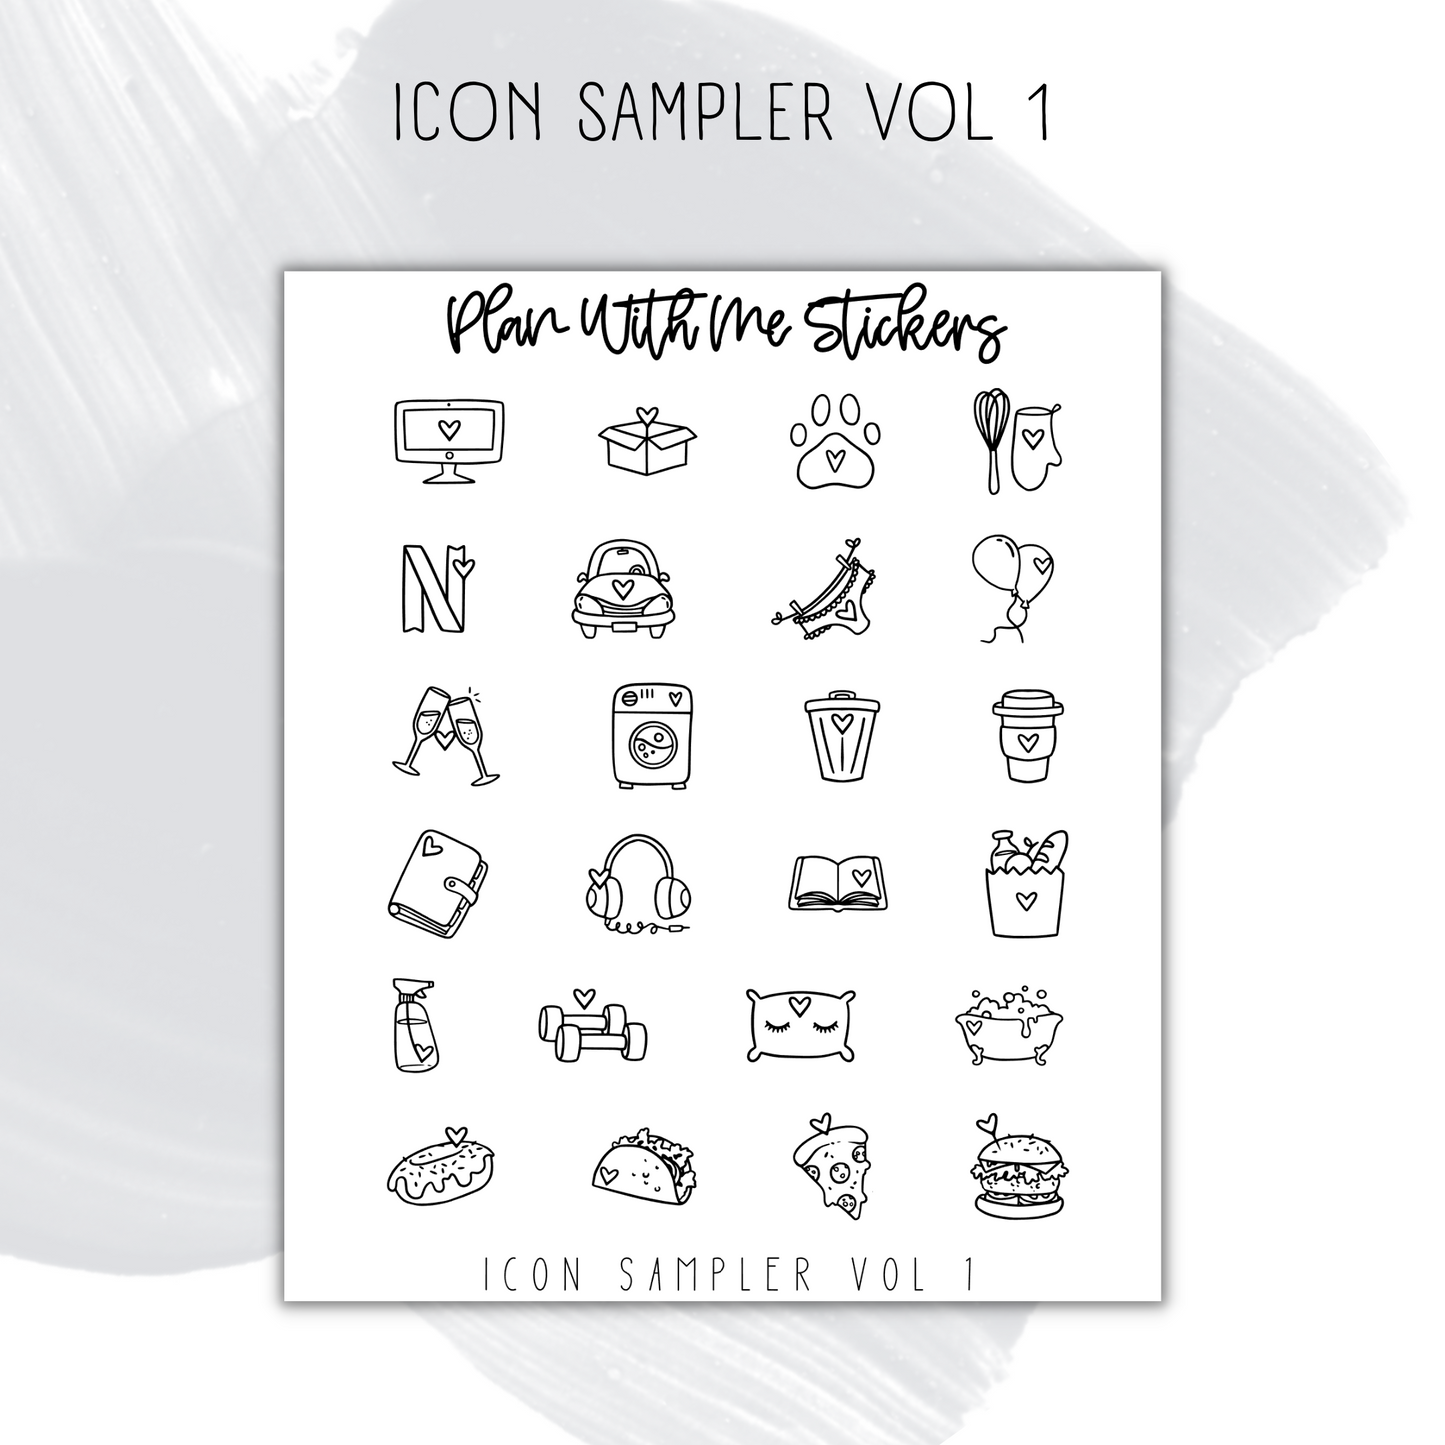 Icon Sampler Vol 1